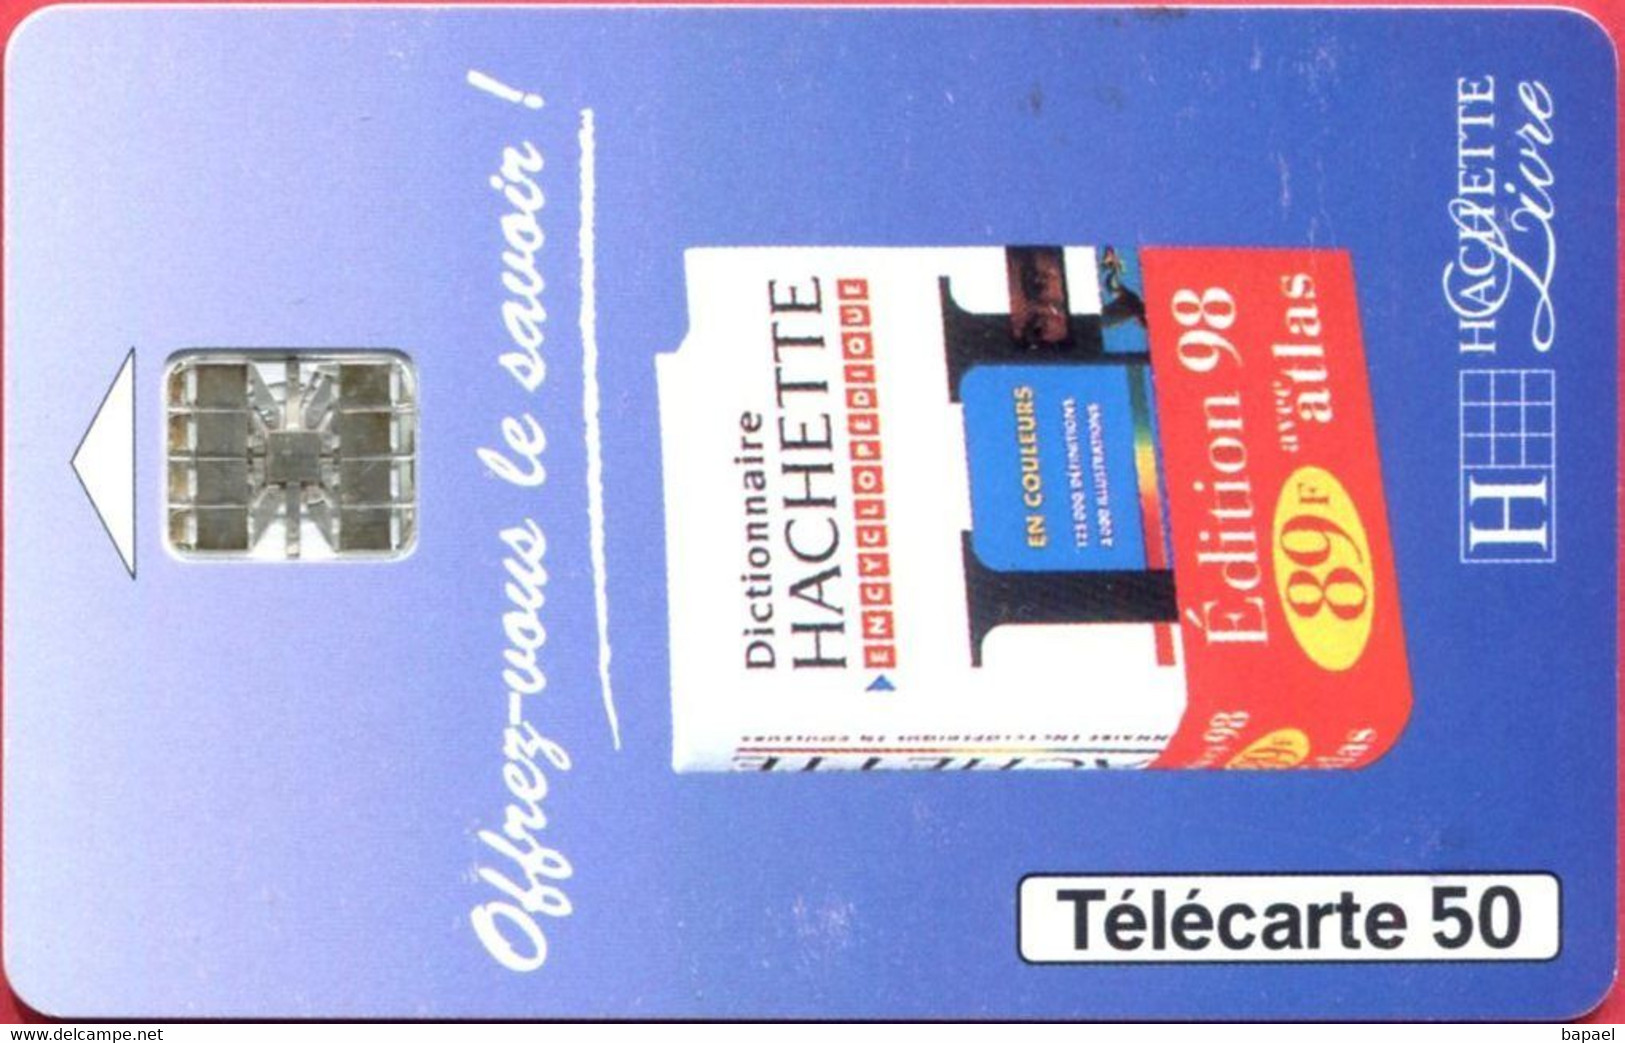 Télécarte Réf Pho 0774 (1997) - Thème Livres - Dictionnaire Hachette 98 (Recto-Verso) - Kultur